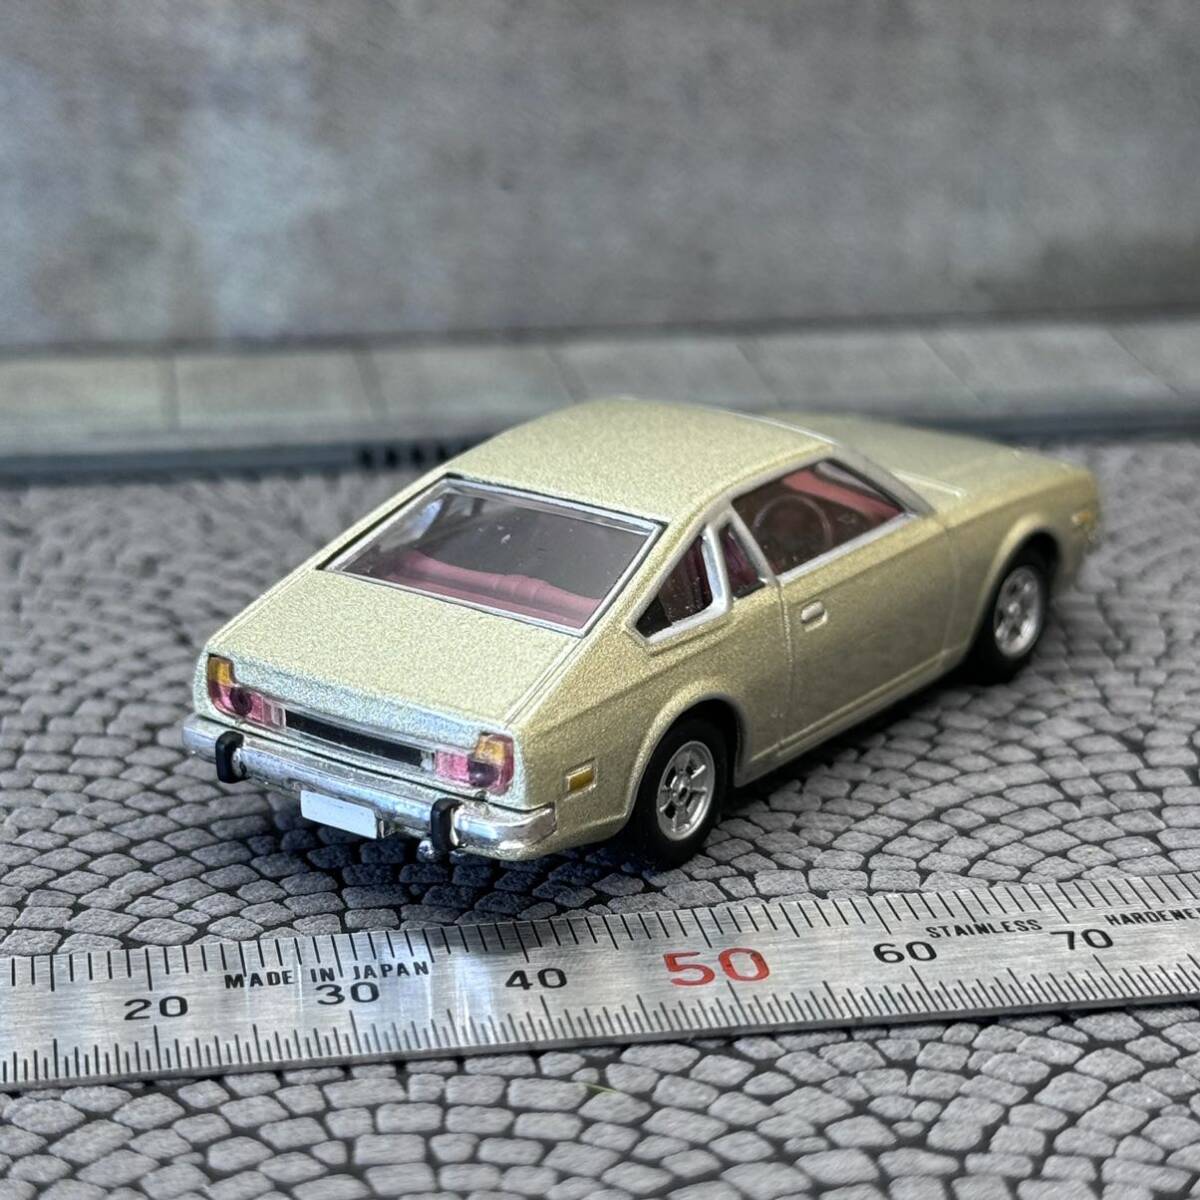 【CJ-671】1/64 スケール マツダ コスモ AP シャンパンゴールド 1975 絶版名車 コナミ ミニカー_画像4